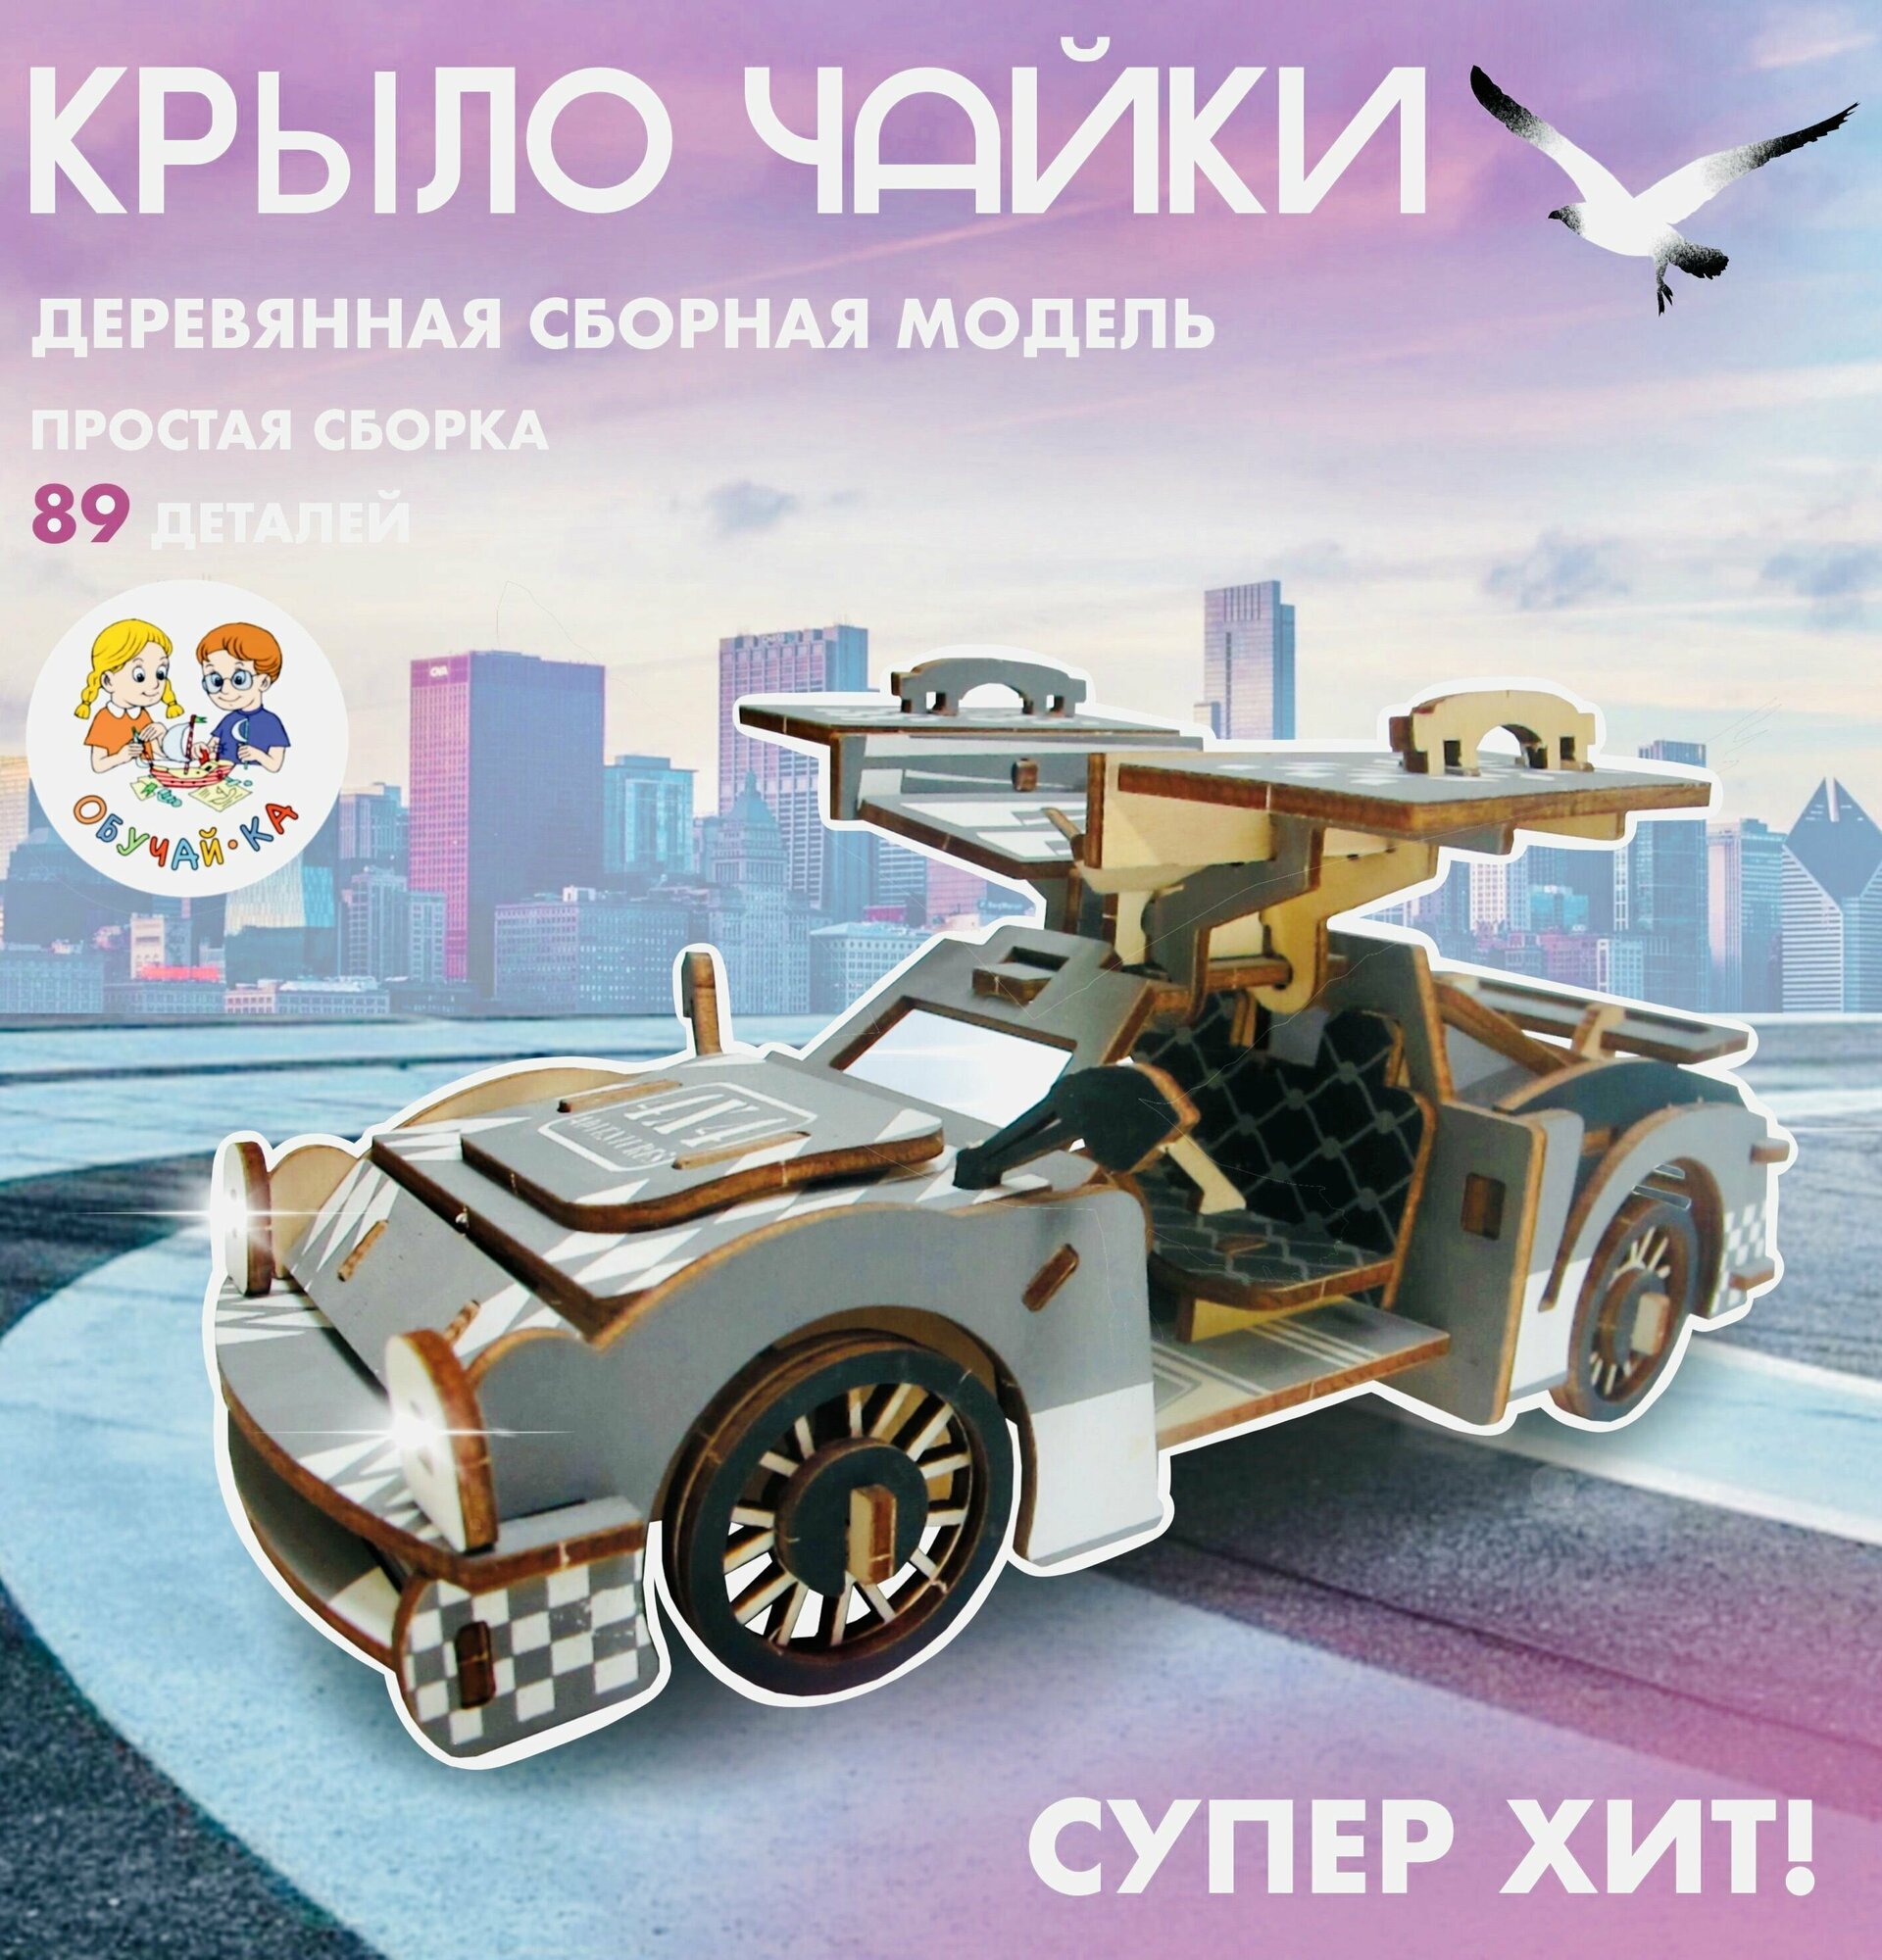 3D puzzle Сборная модель деревянный конструктор - гоночный автомобиль "Крыло чайки"